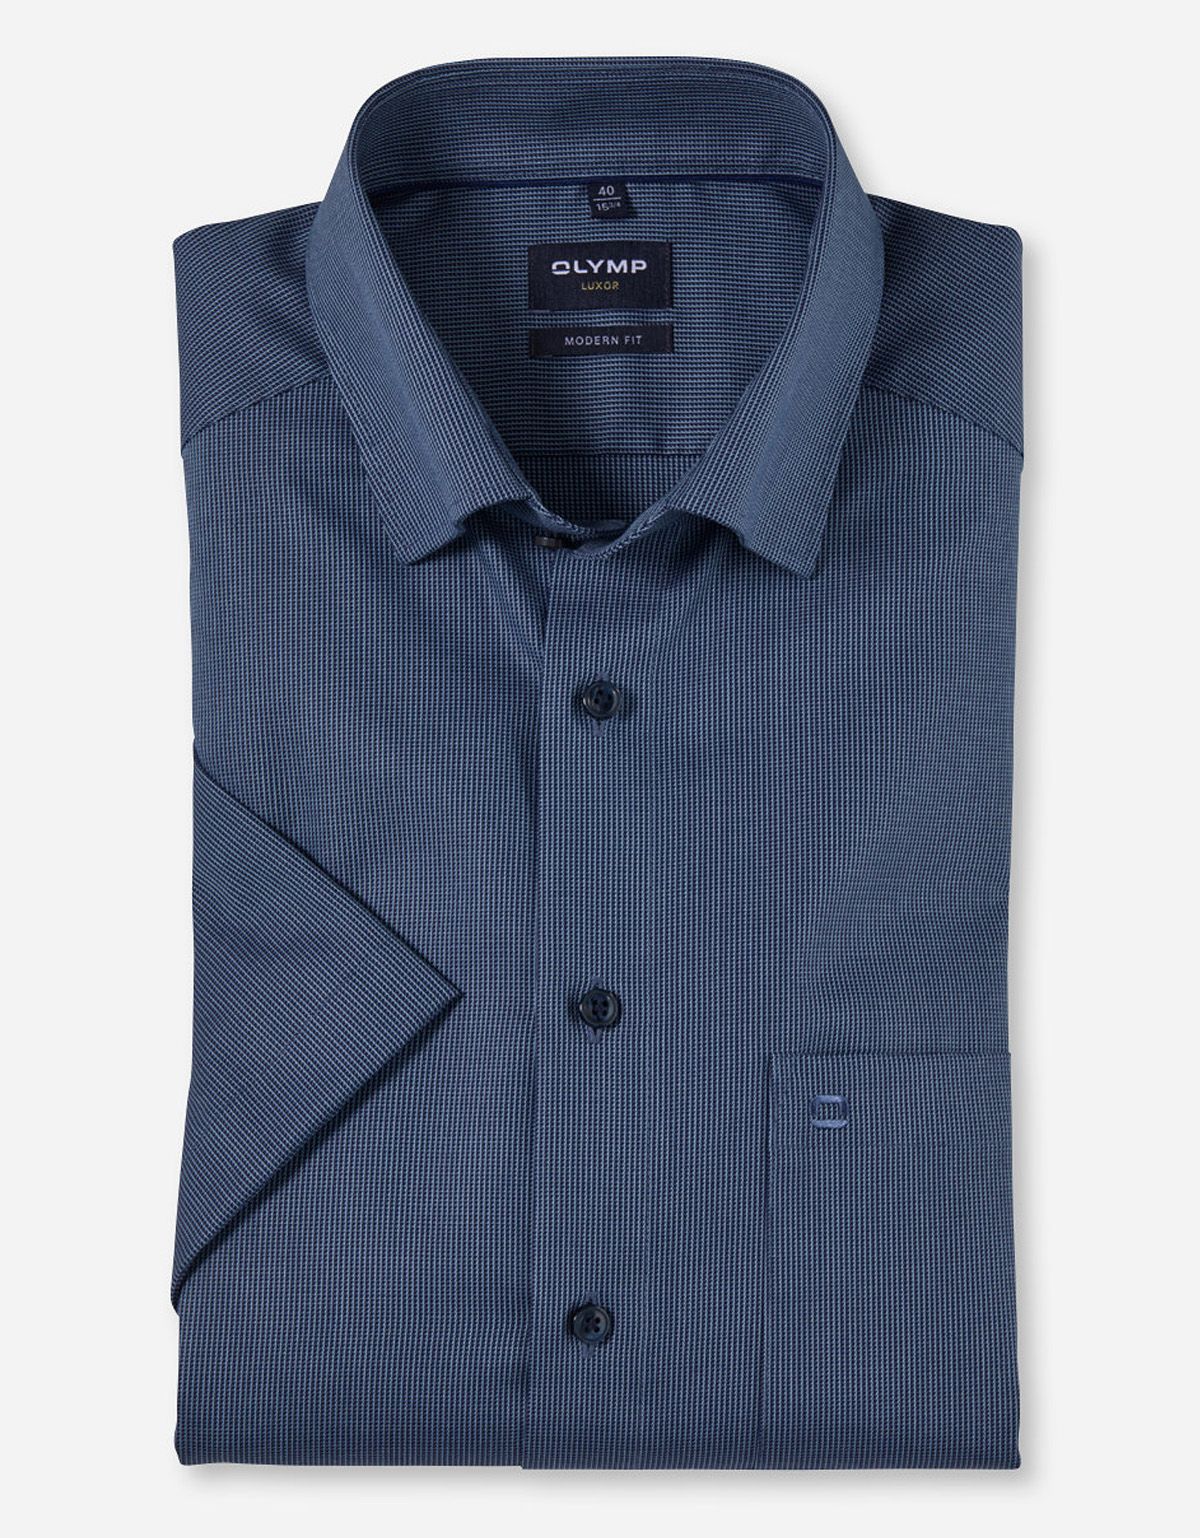 Рубашка с коротким рукавом мужская OLYMP Luxor, modern fit[СИНИЙ]